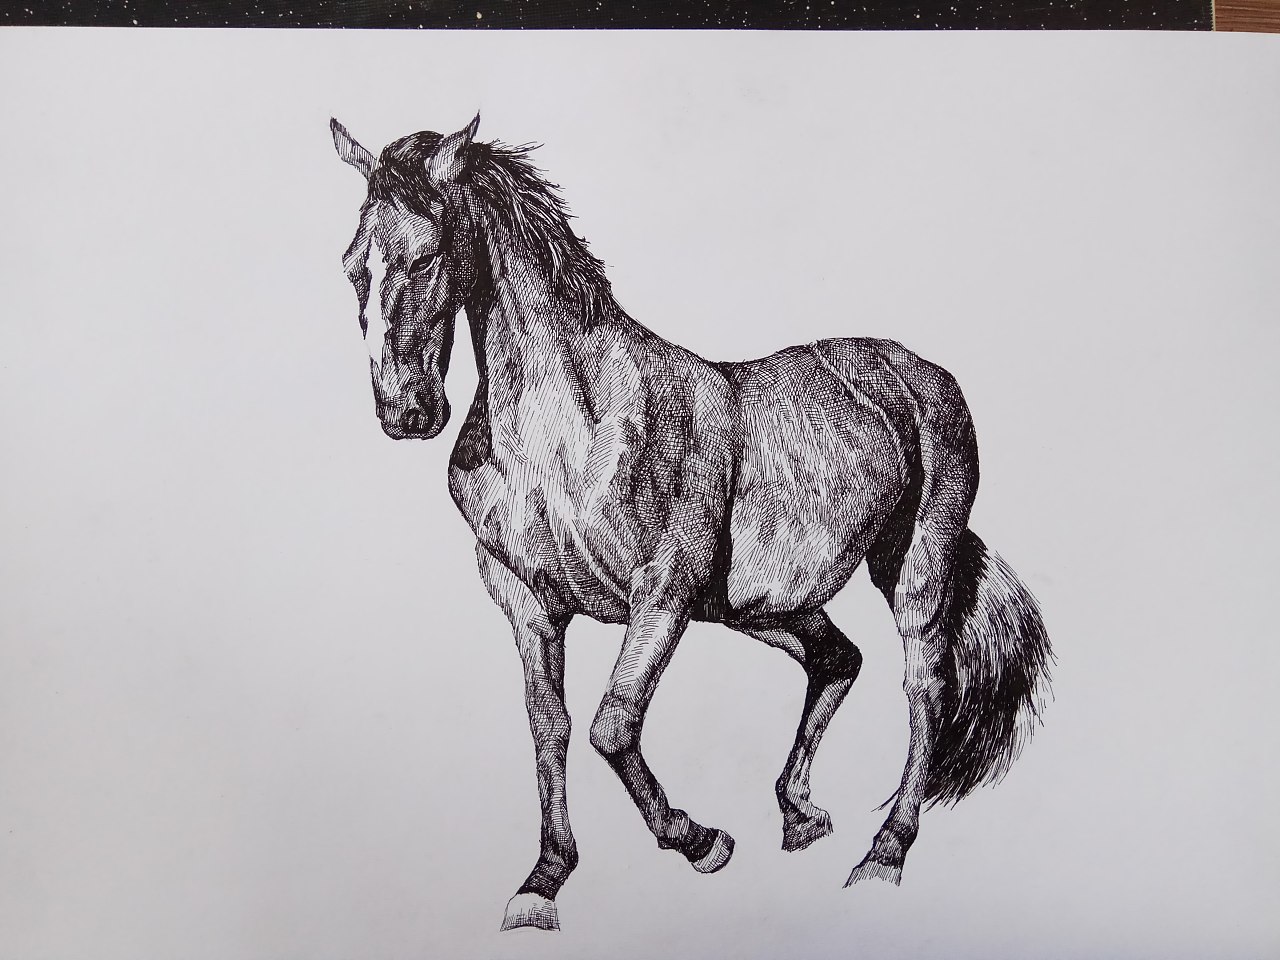 怎么画马的简笔画 马的画法-动物简笔画-欣欣简笔画